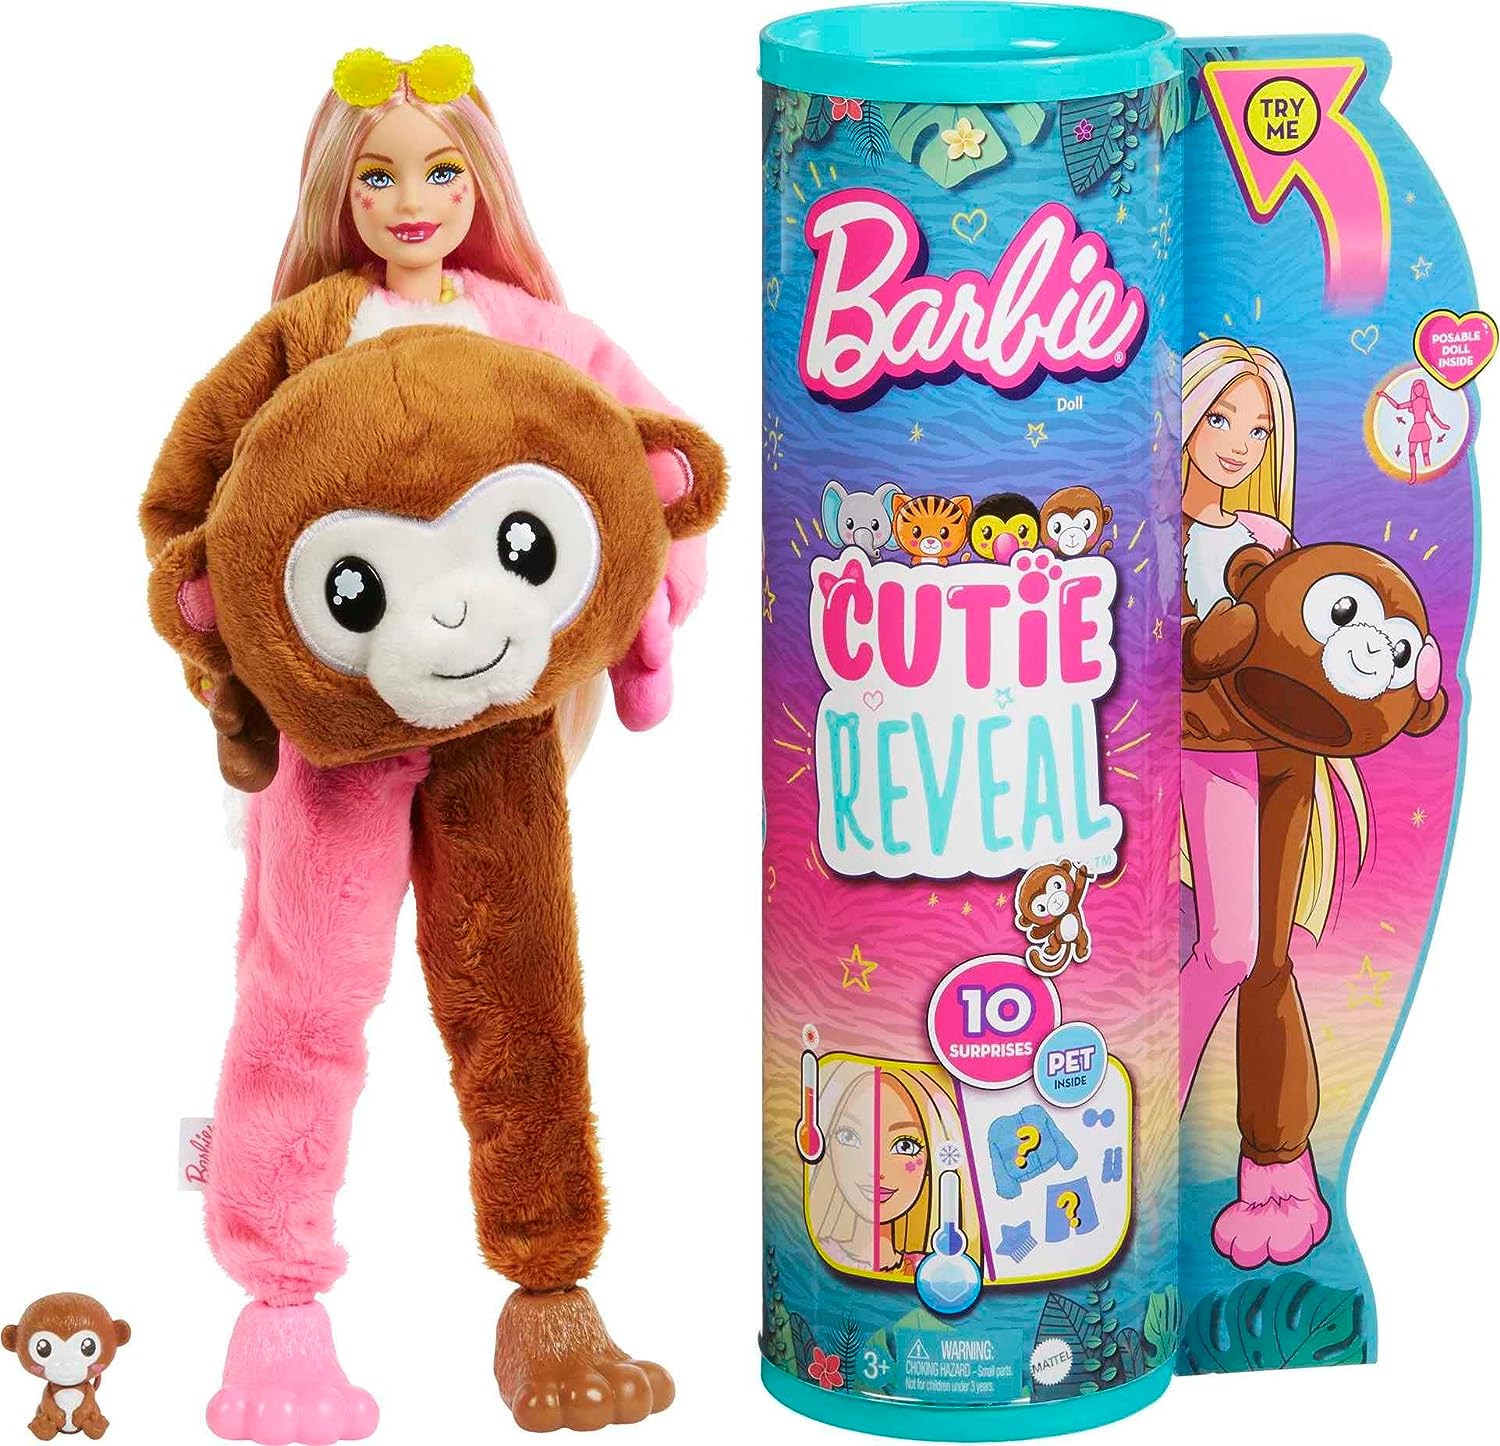 Barbie Cutie Reveal Fashion Doll, Jungle Series Monkey Plush Costume, 10 Surprises Including Mini Pet  Color Change